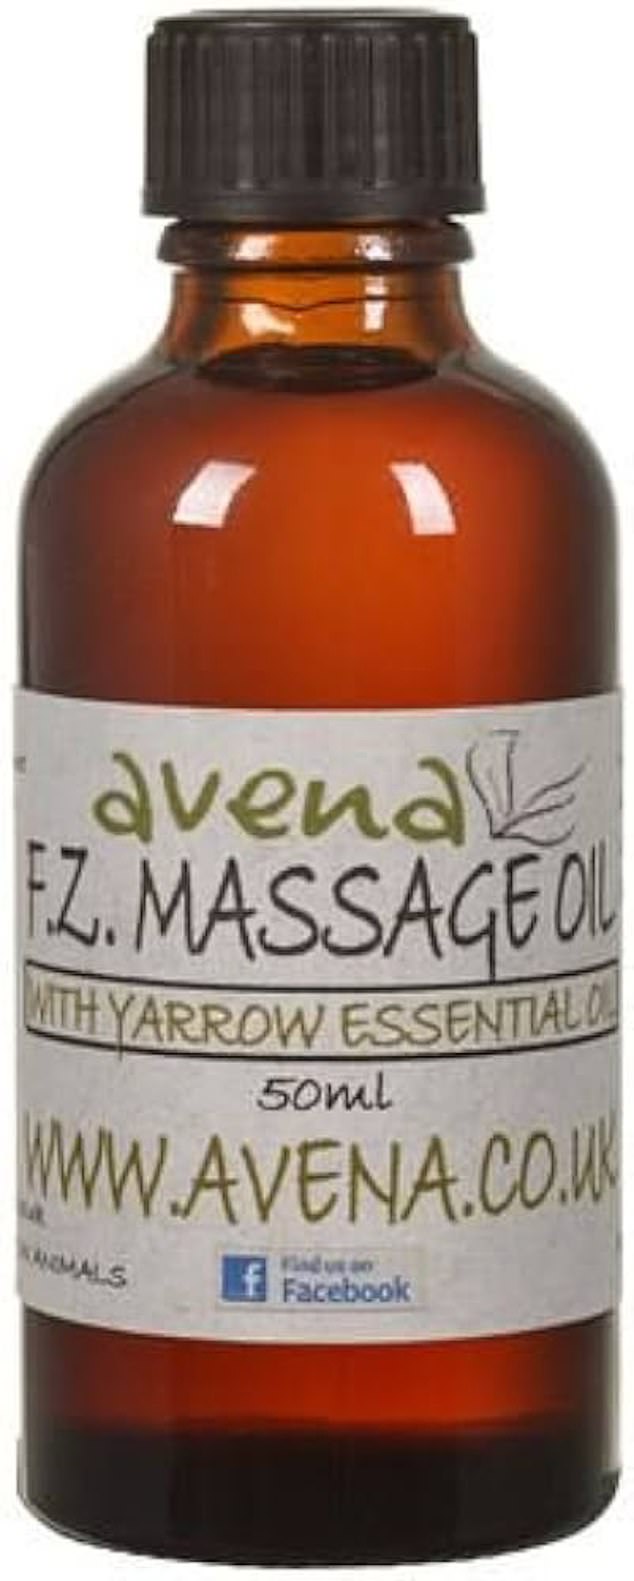 Frozen Shoulder Massage Oil, £19.99, avena.co.uk